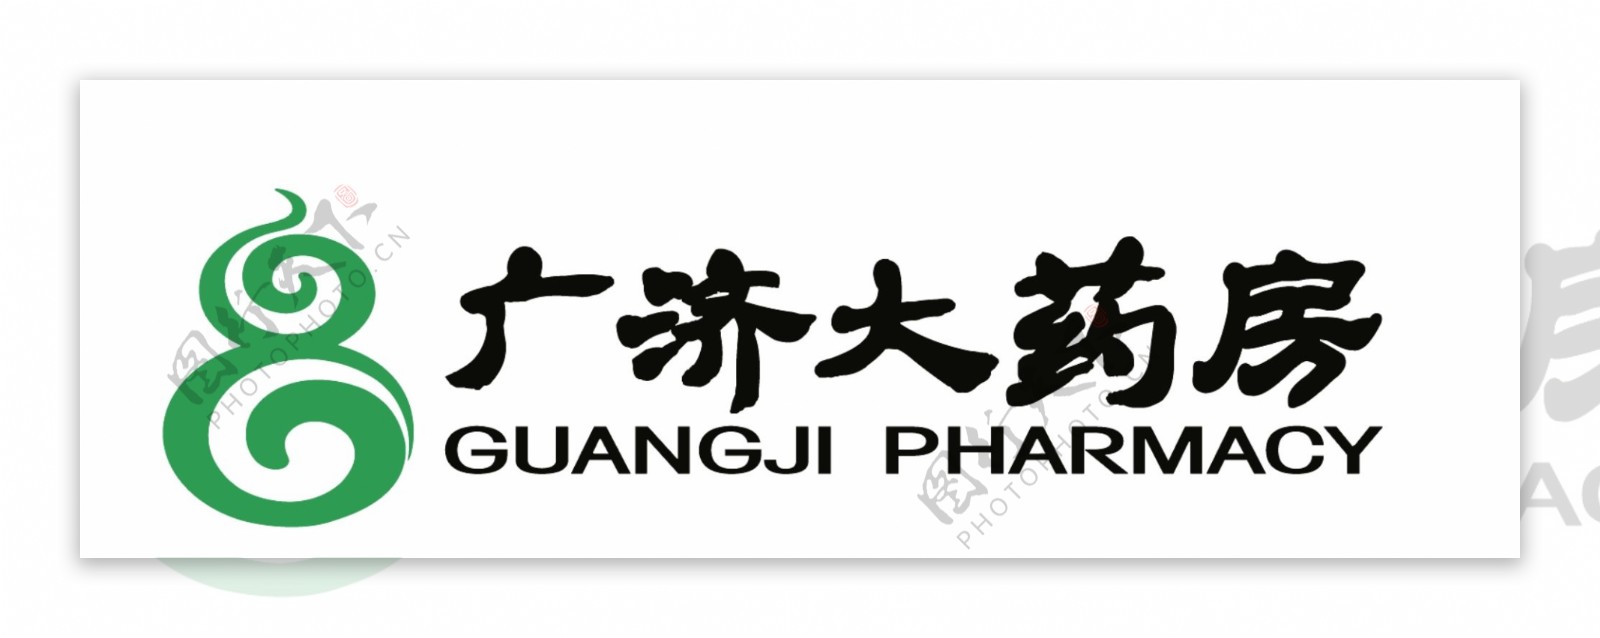 广济大药房logo